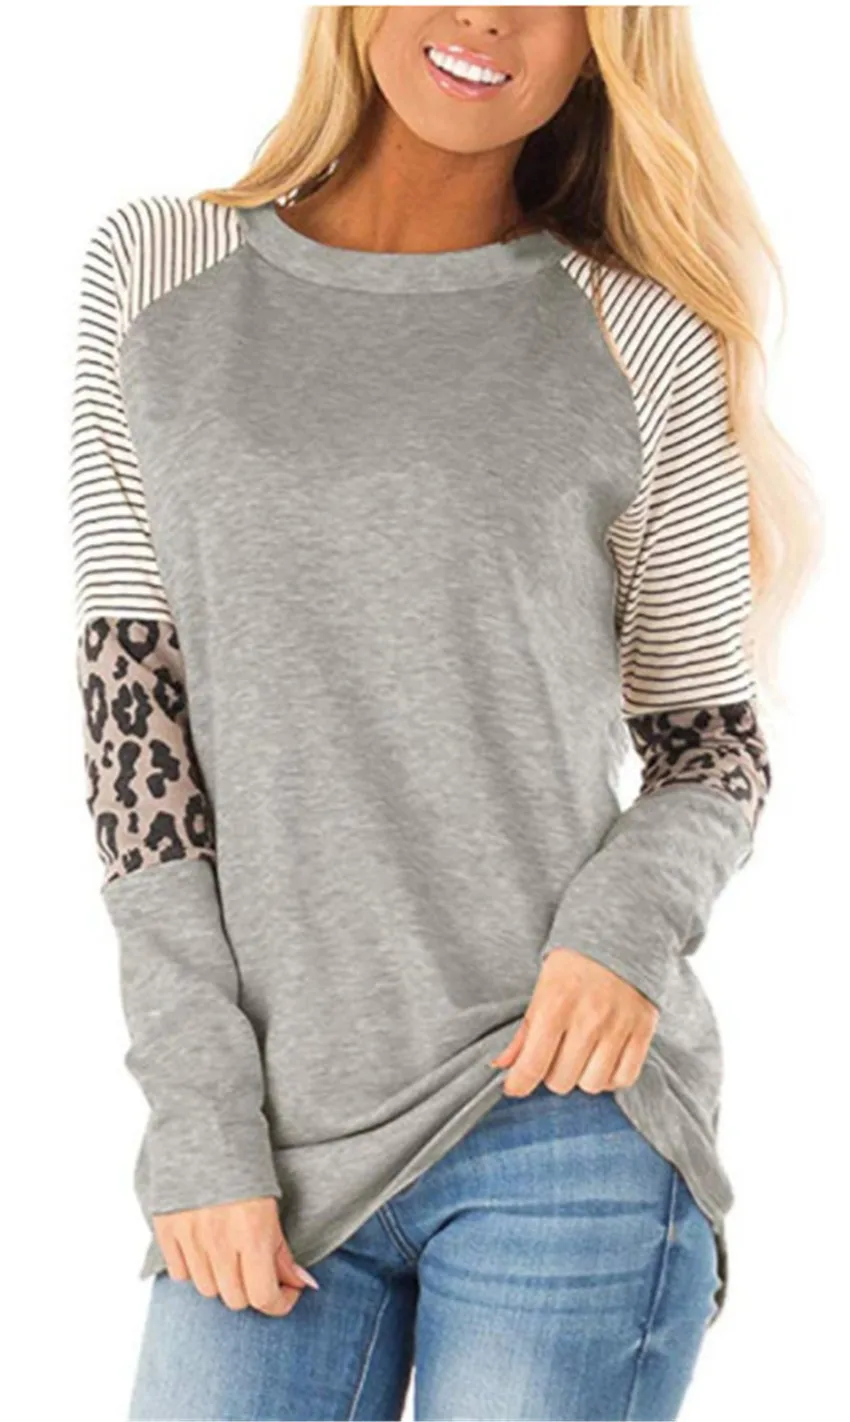 Осенний Топ Женская футболка с длинным рукавом топ в полоску Футболка женские леопардовые футболки со строчкой модный Свободный Топ Женская Футболка 2XL - Цвет: gray